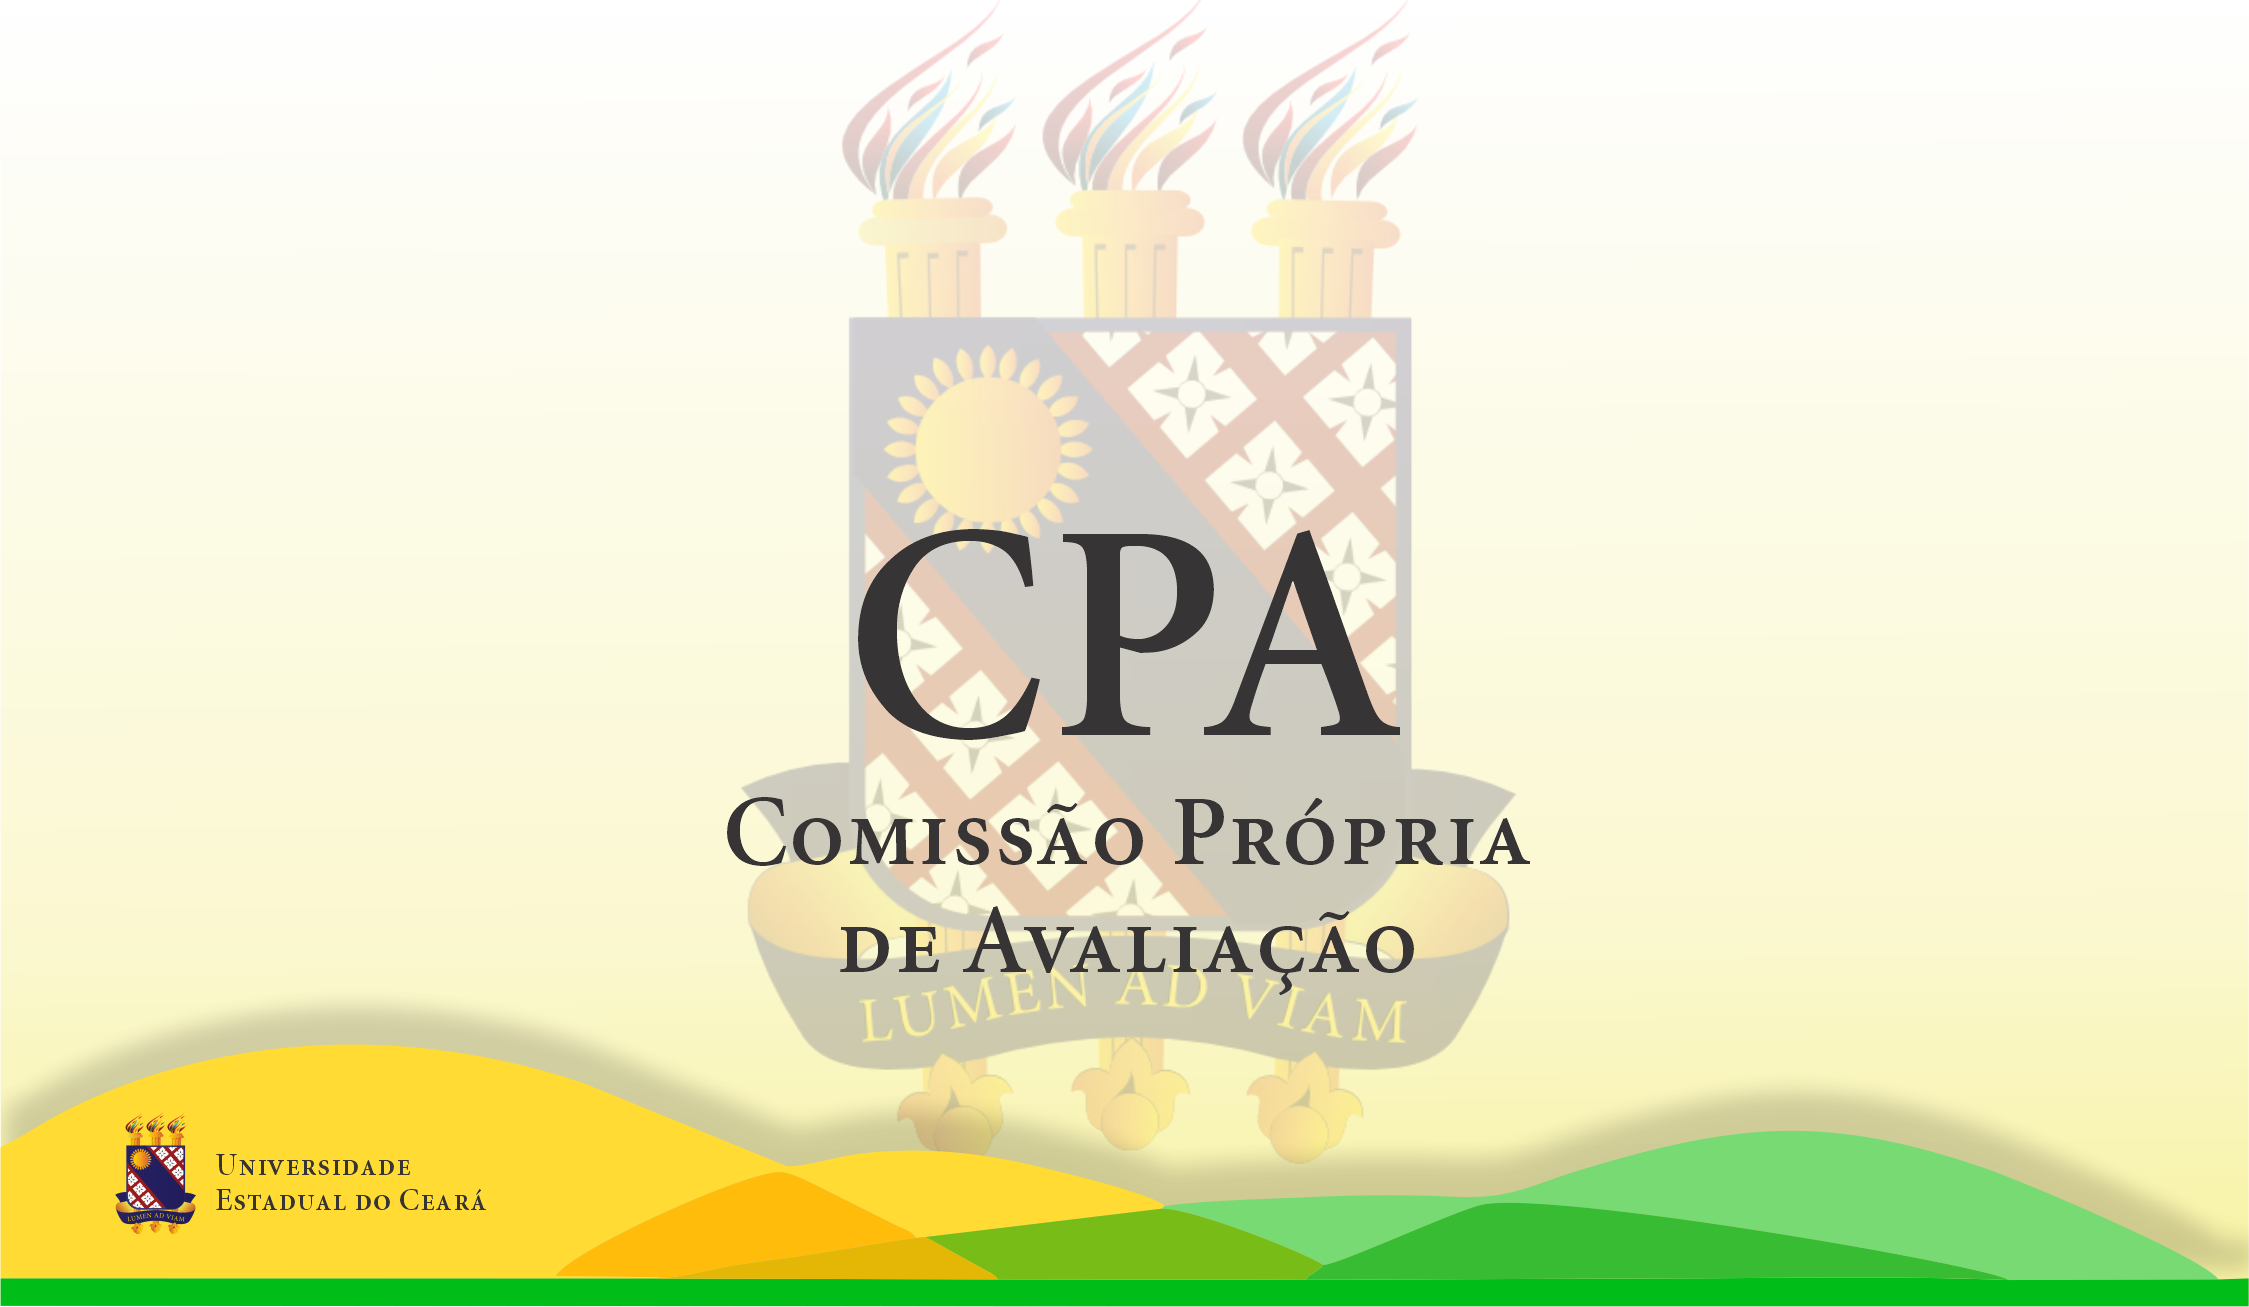 Avaliação Institucional e CPA - Universidade São Judas Tadeu